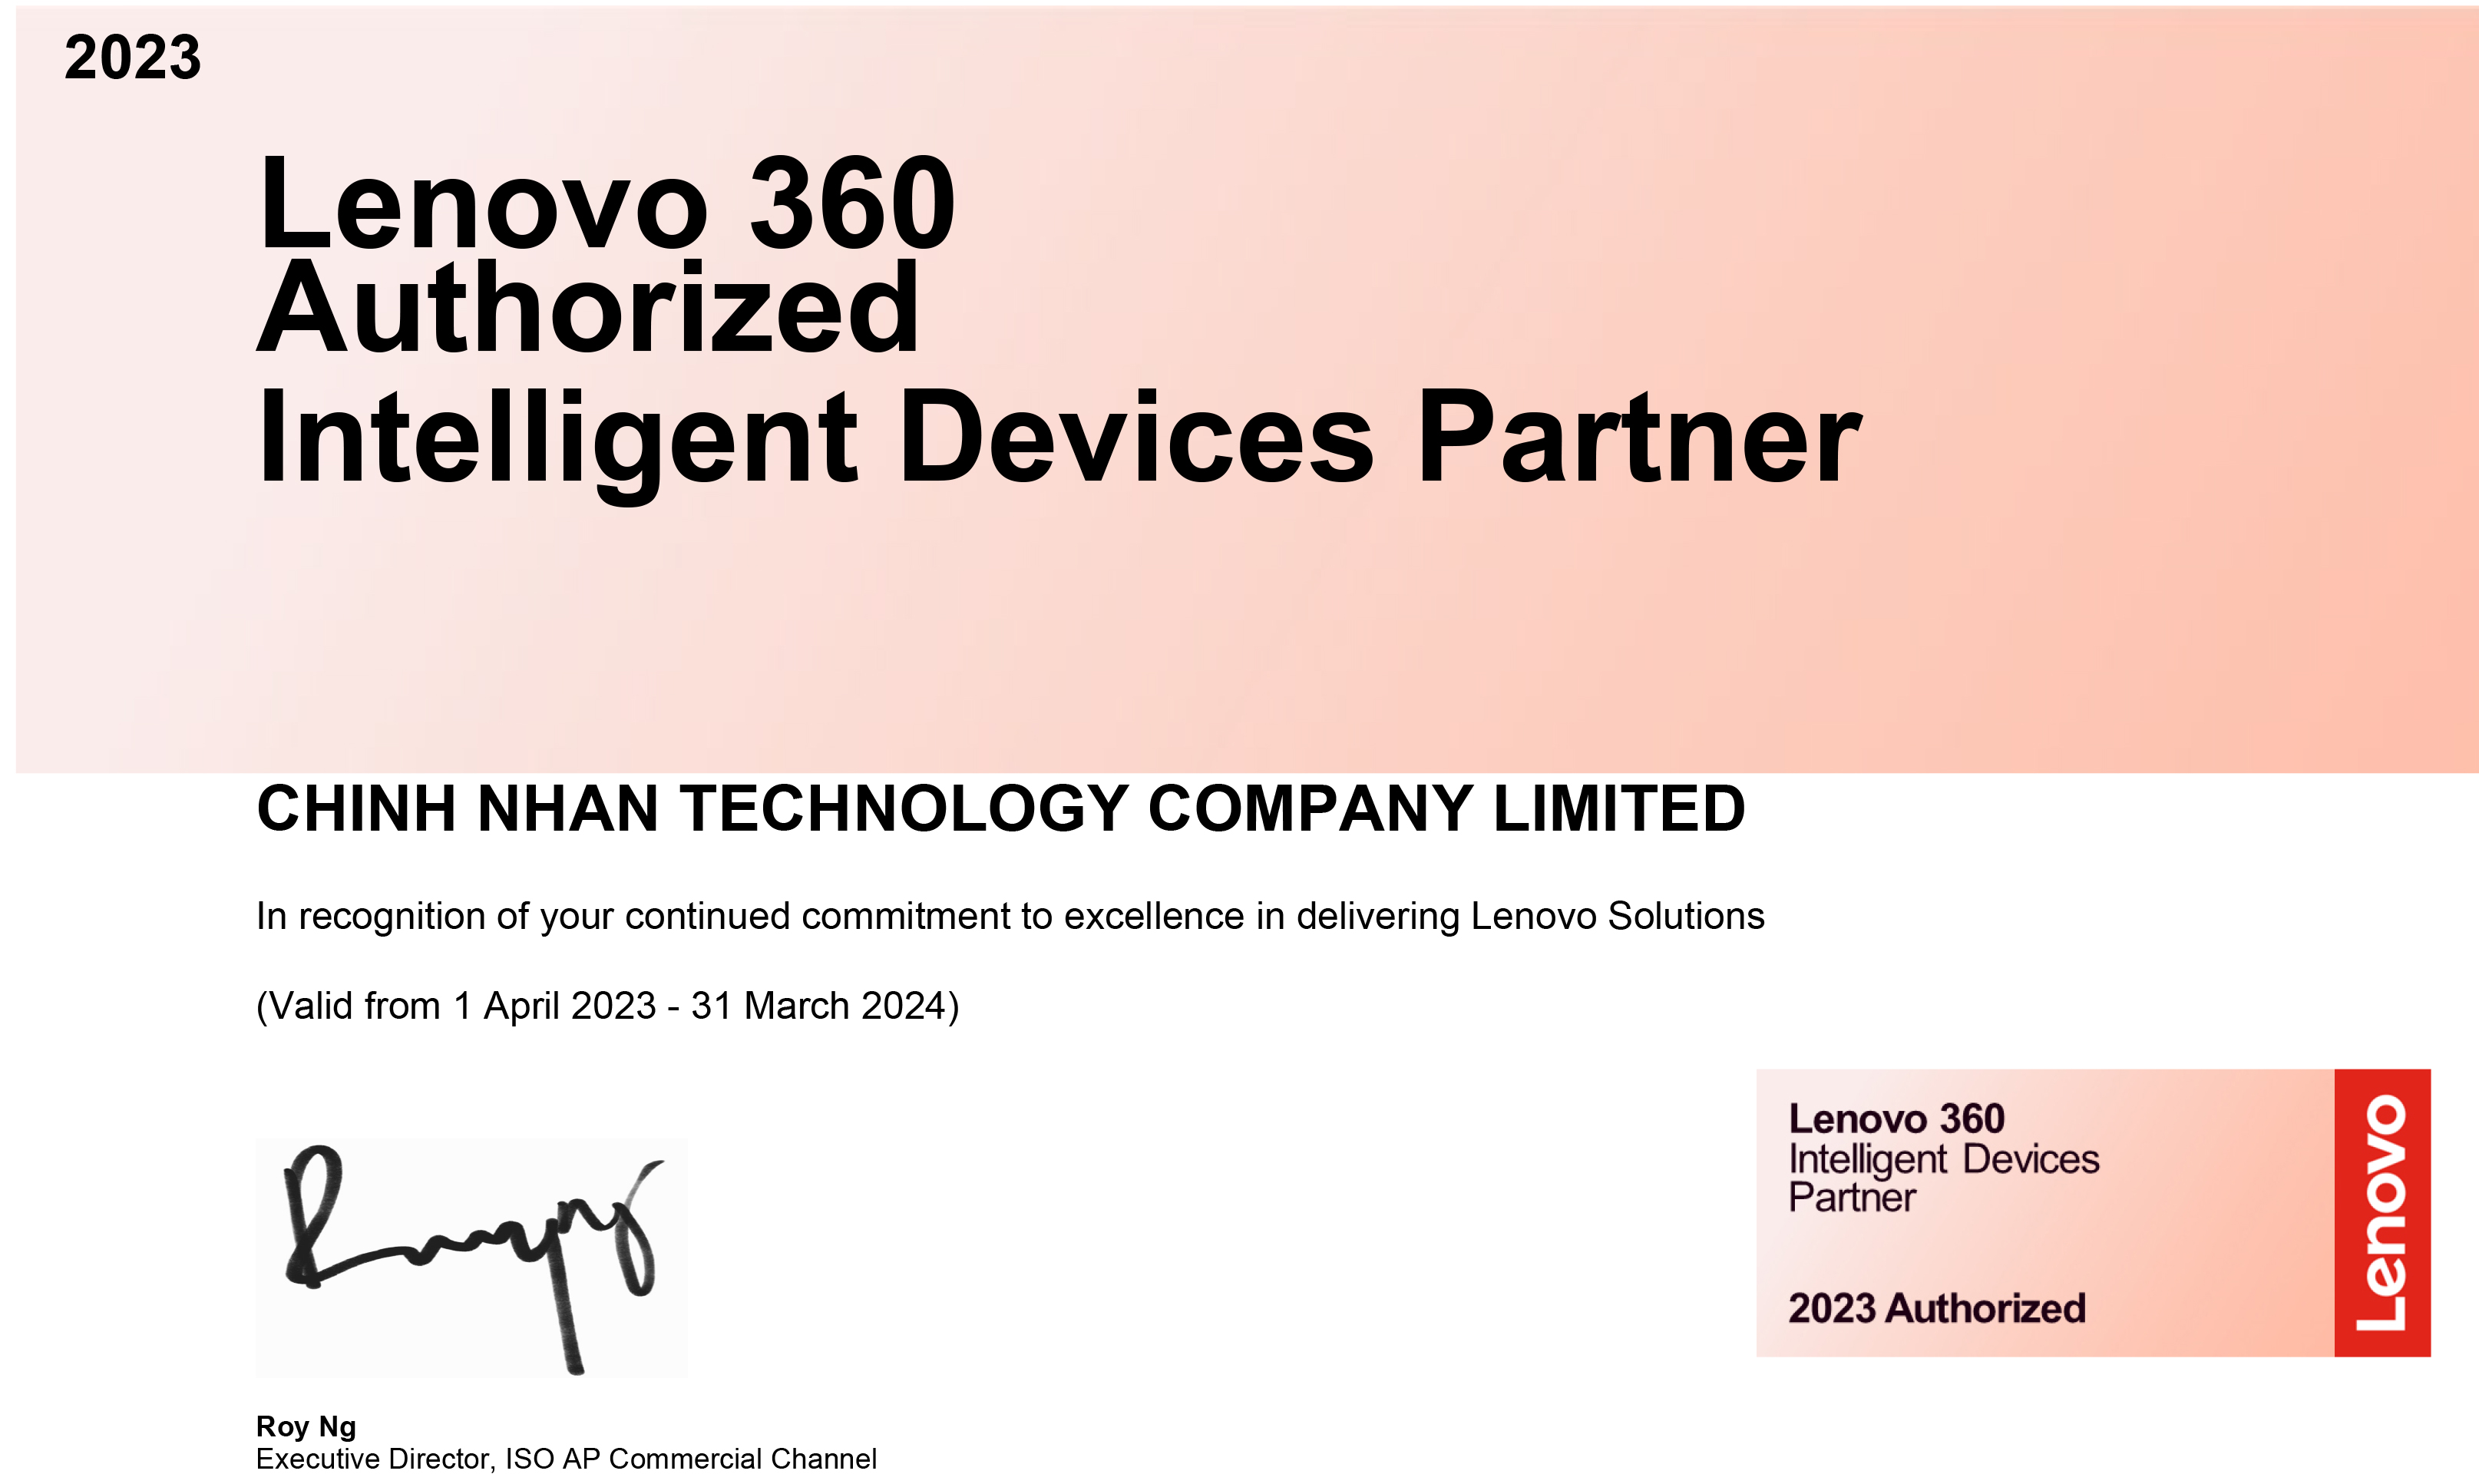 Lenovo 360 Authorized  Intelligent Devices Partner - Công Nghệ Chính Nhân